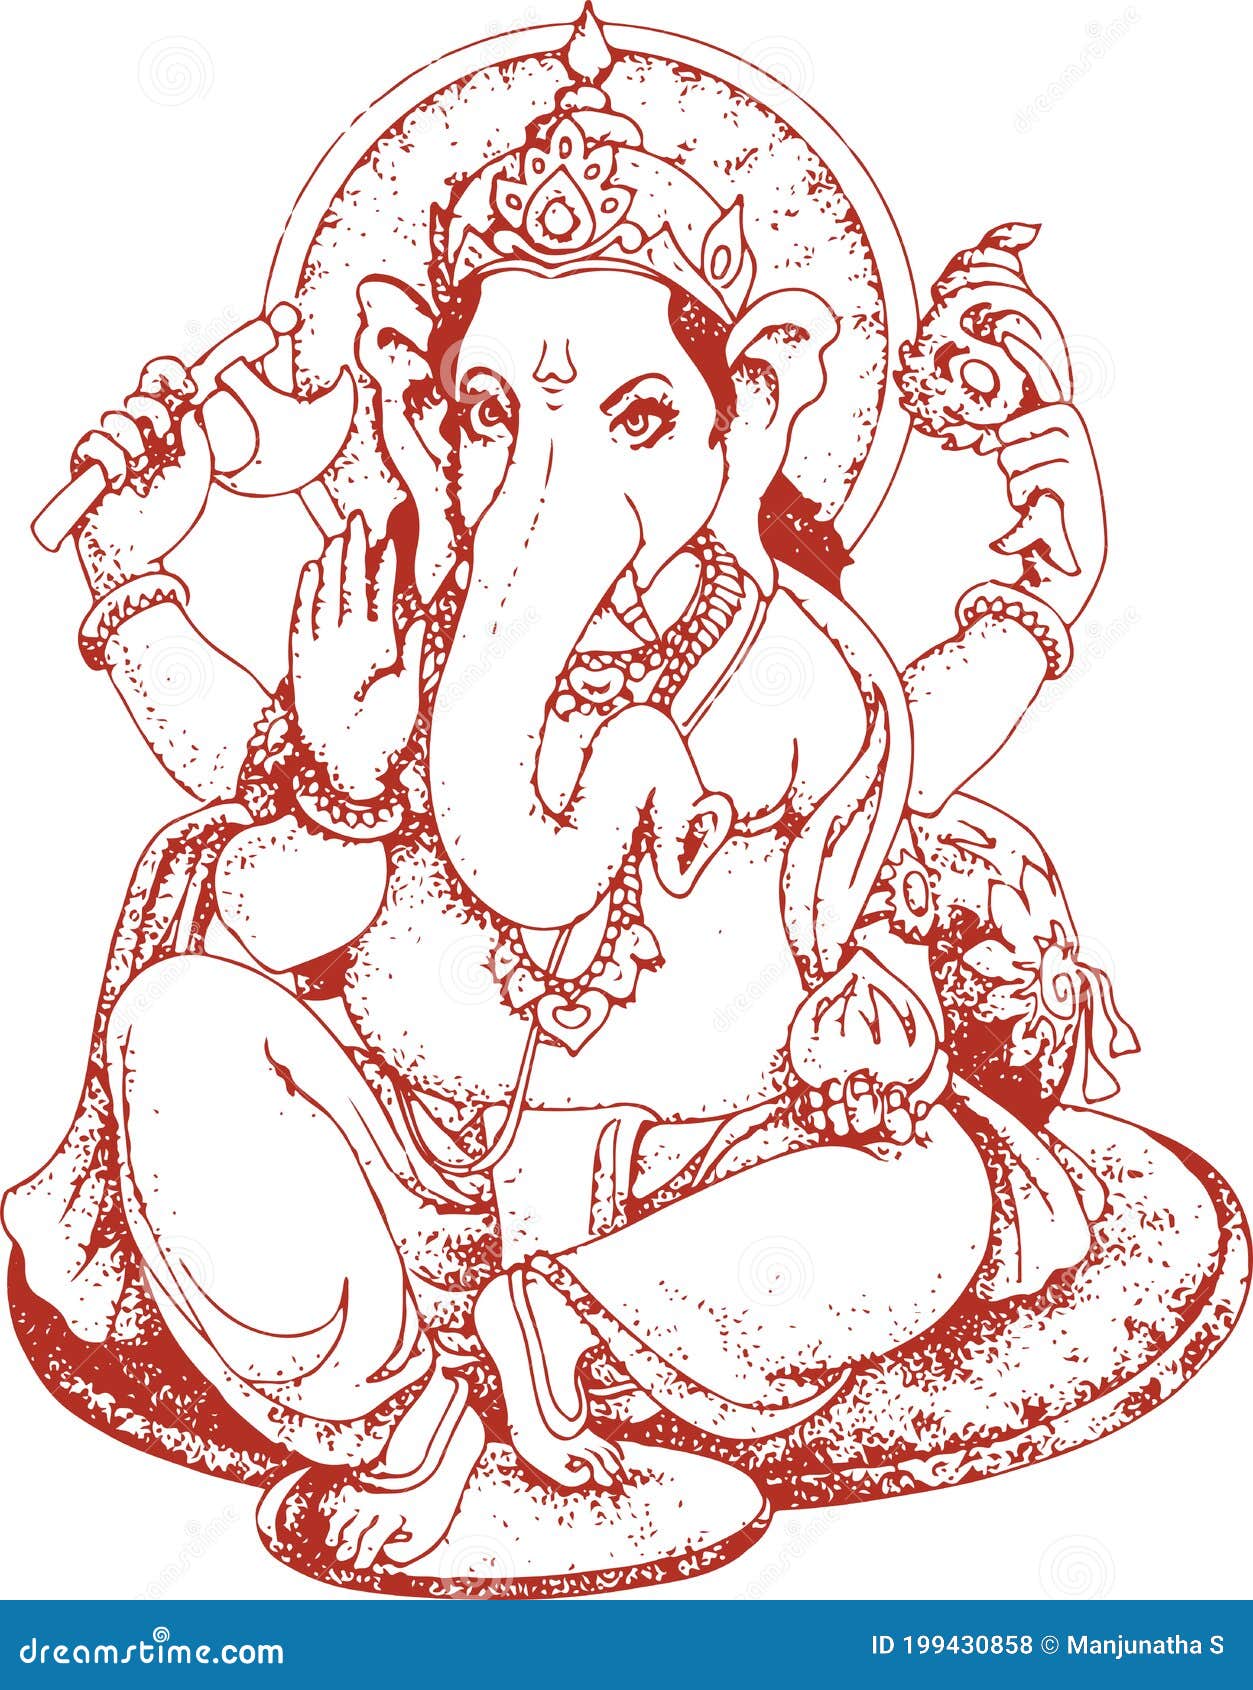 How to draw vinayagar | pencil drawing of ganesha | ganesha drawing | easy  drawing of ganesha - YouTube